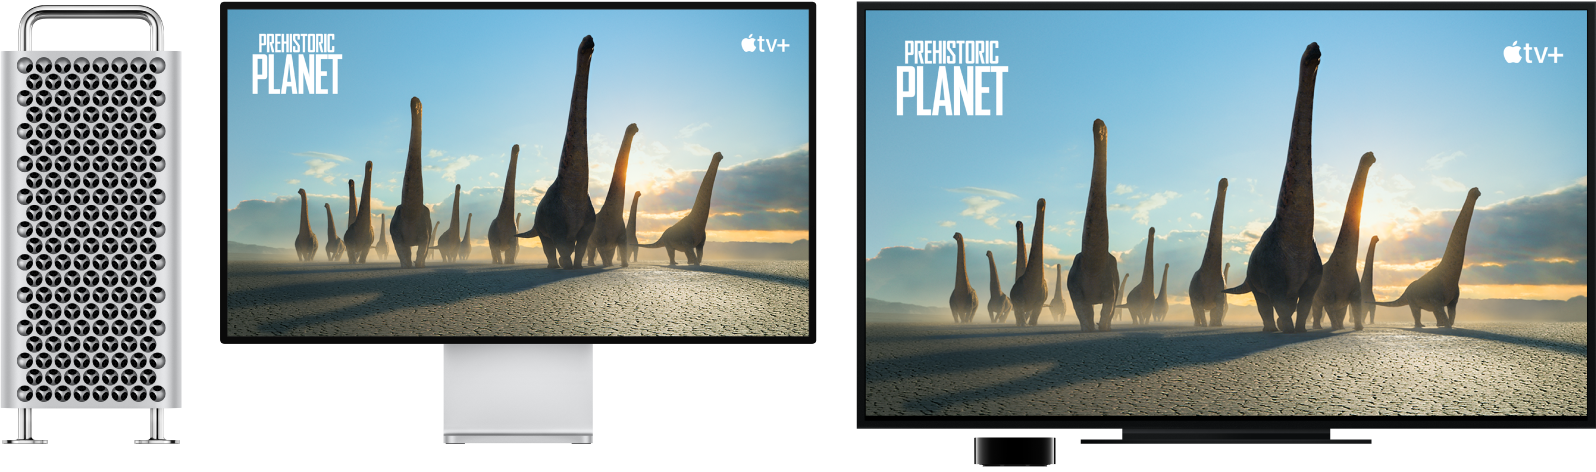 Mac Pro s obsahem zrcadleným přes Apple TV na velkém HD televizoru